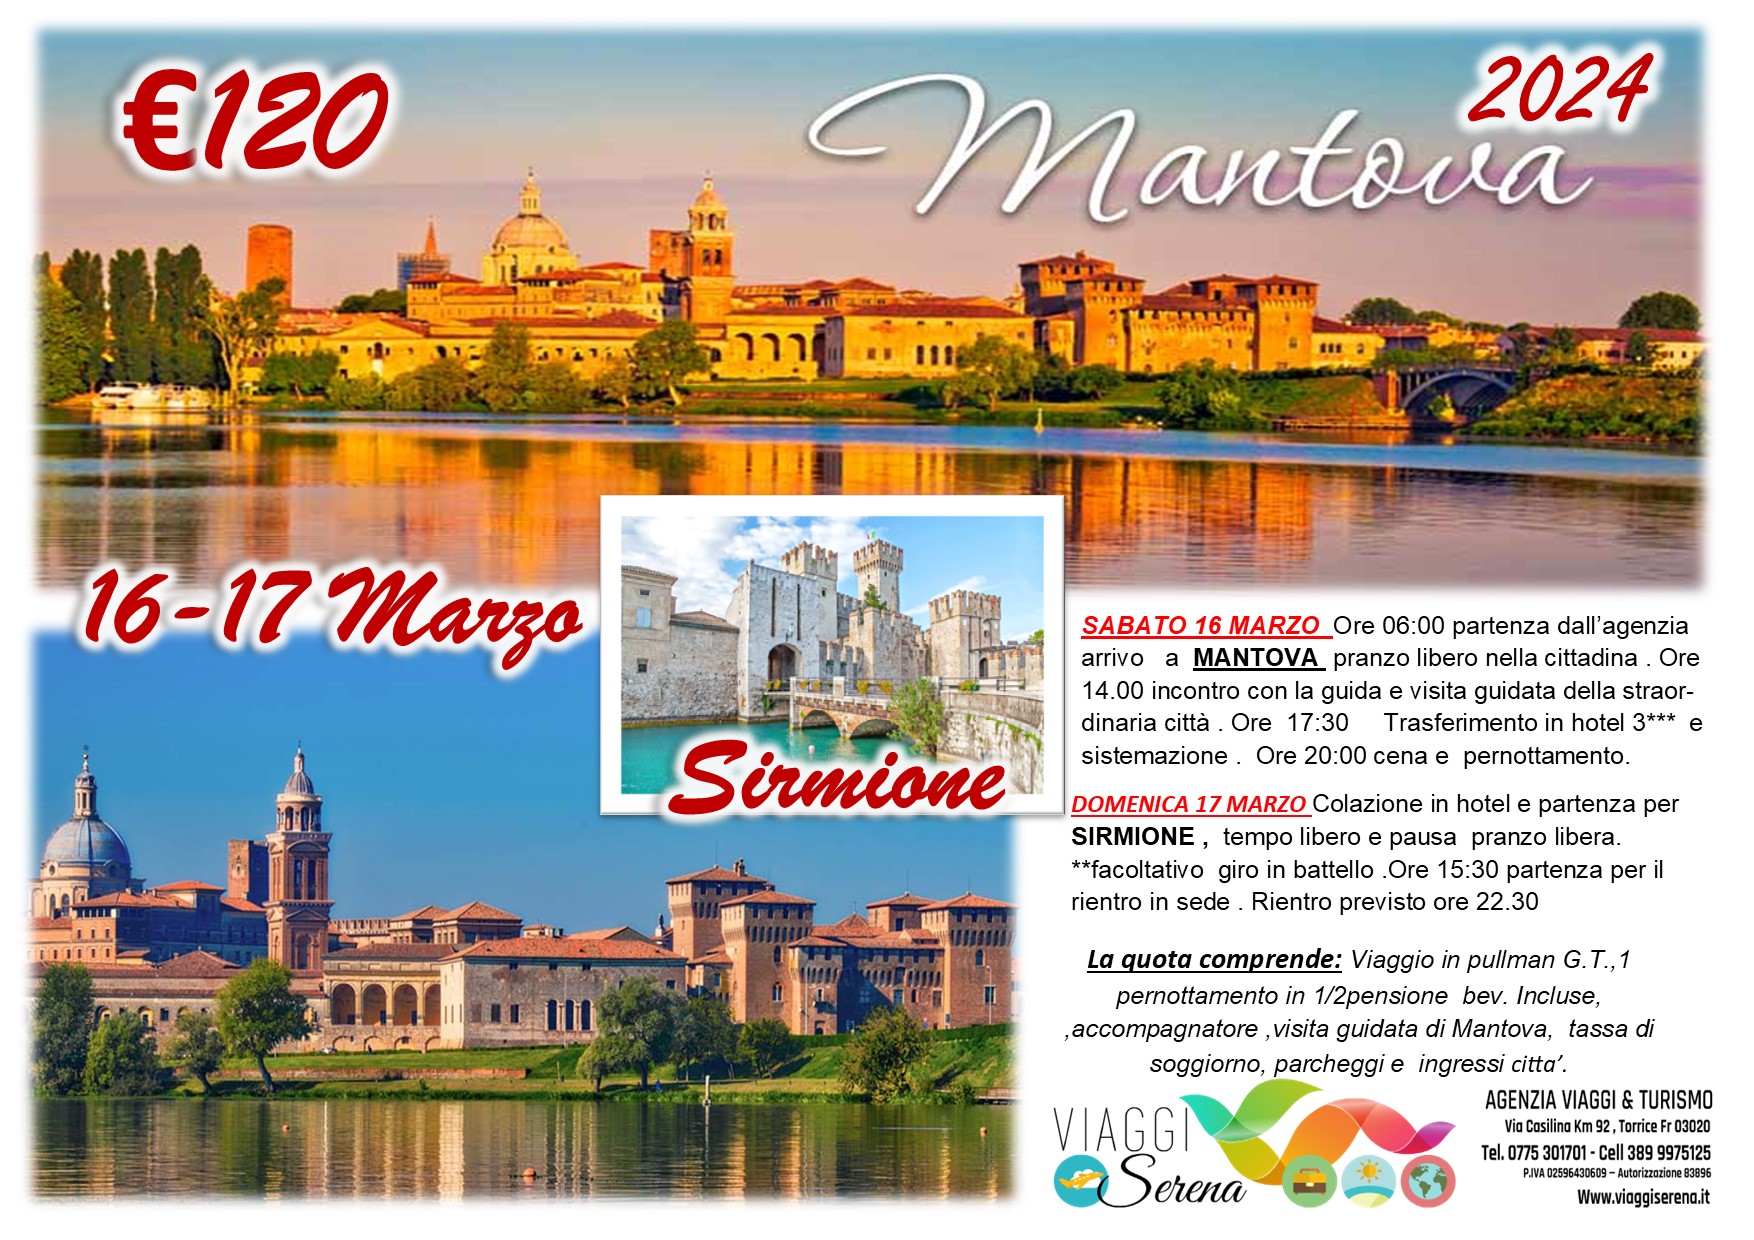 Viaggi di gruppo: Mantova & Sirmione 16-17 Marzo € 120,00